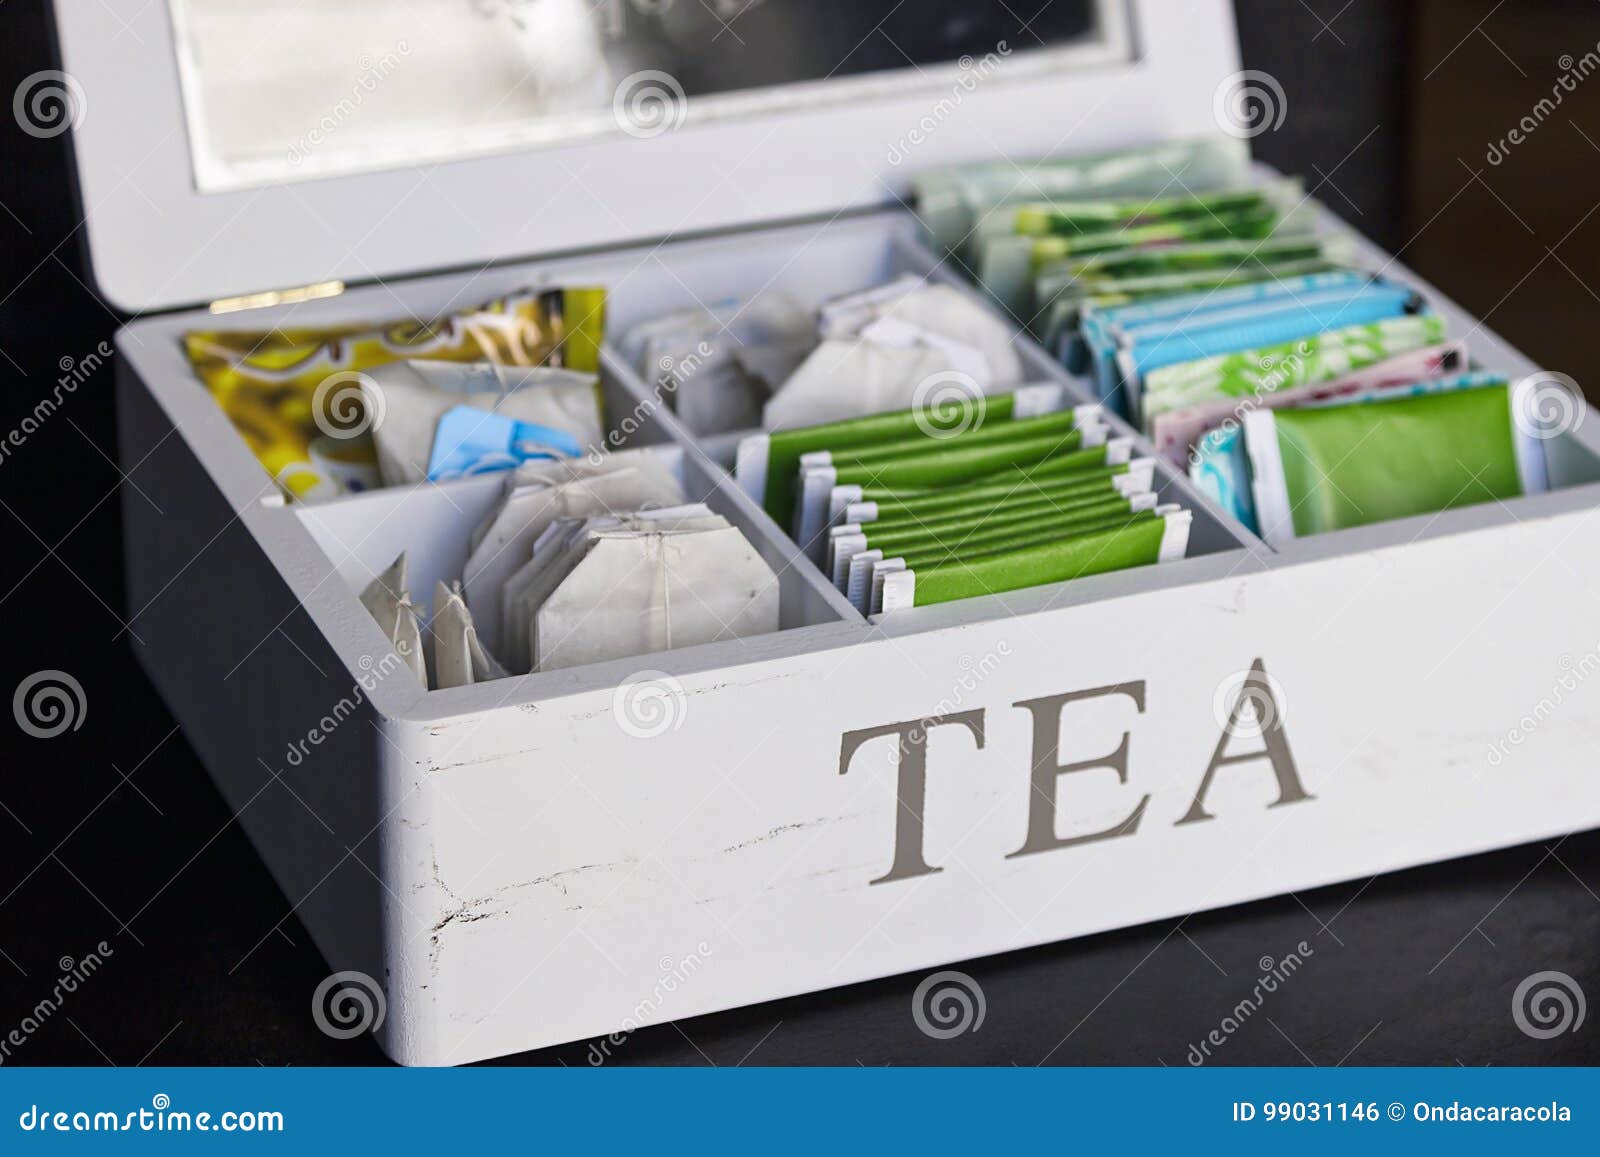 Сколько всего украшений лежит в коробке. Белая коробка чая. Белая коробочка чая. Чай в пакетиках белая коробка. Креативные коробочки для чая.